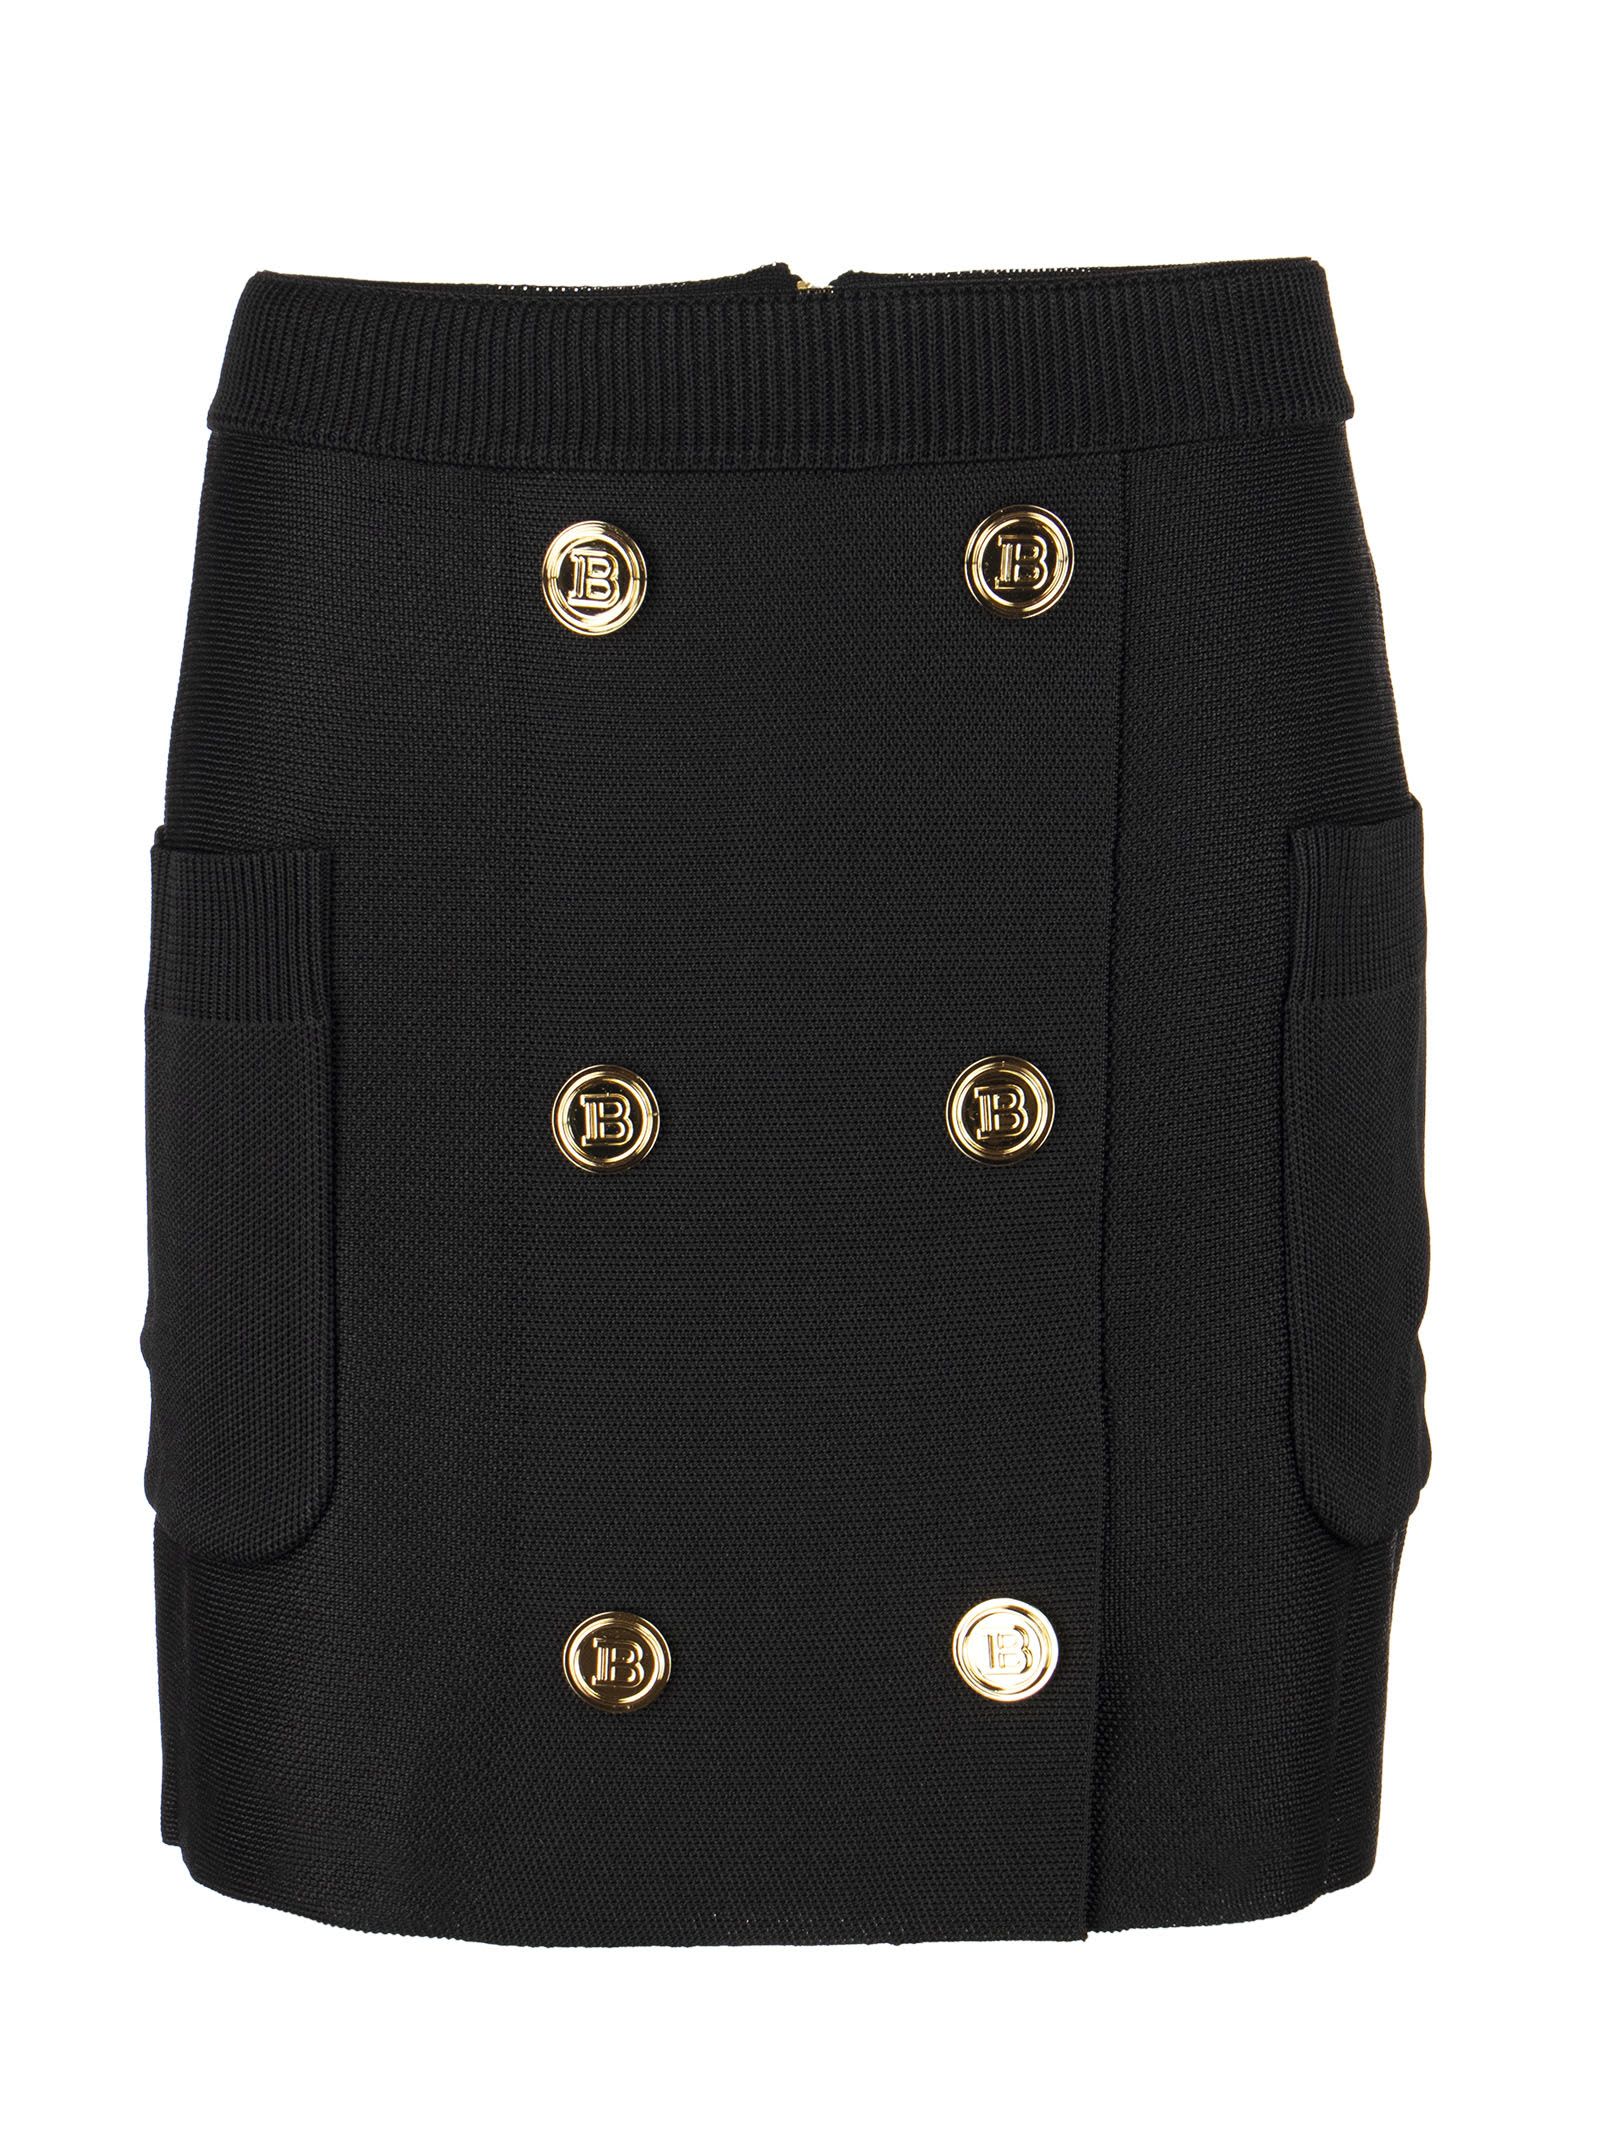 Balmain Short Black Knit Double-buttoned Skirt